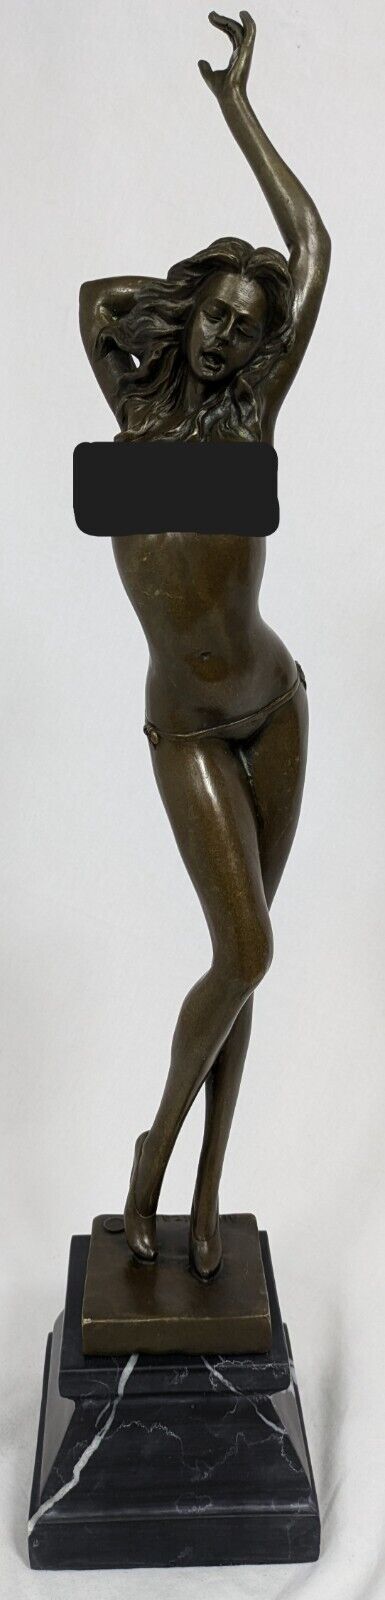 ALDO VITALEH Bronze LADY IN HIGH HEELS Sculpture Statue HUGE 22